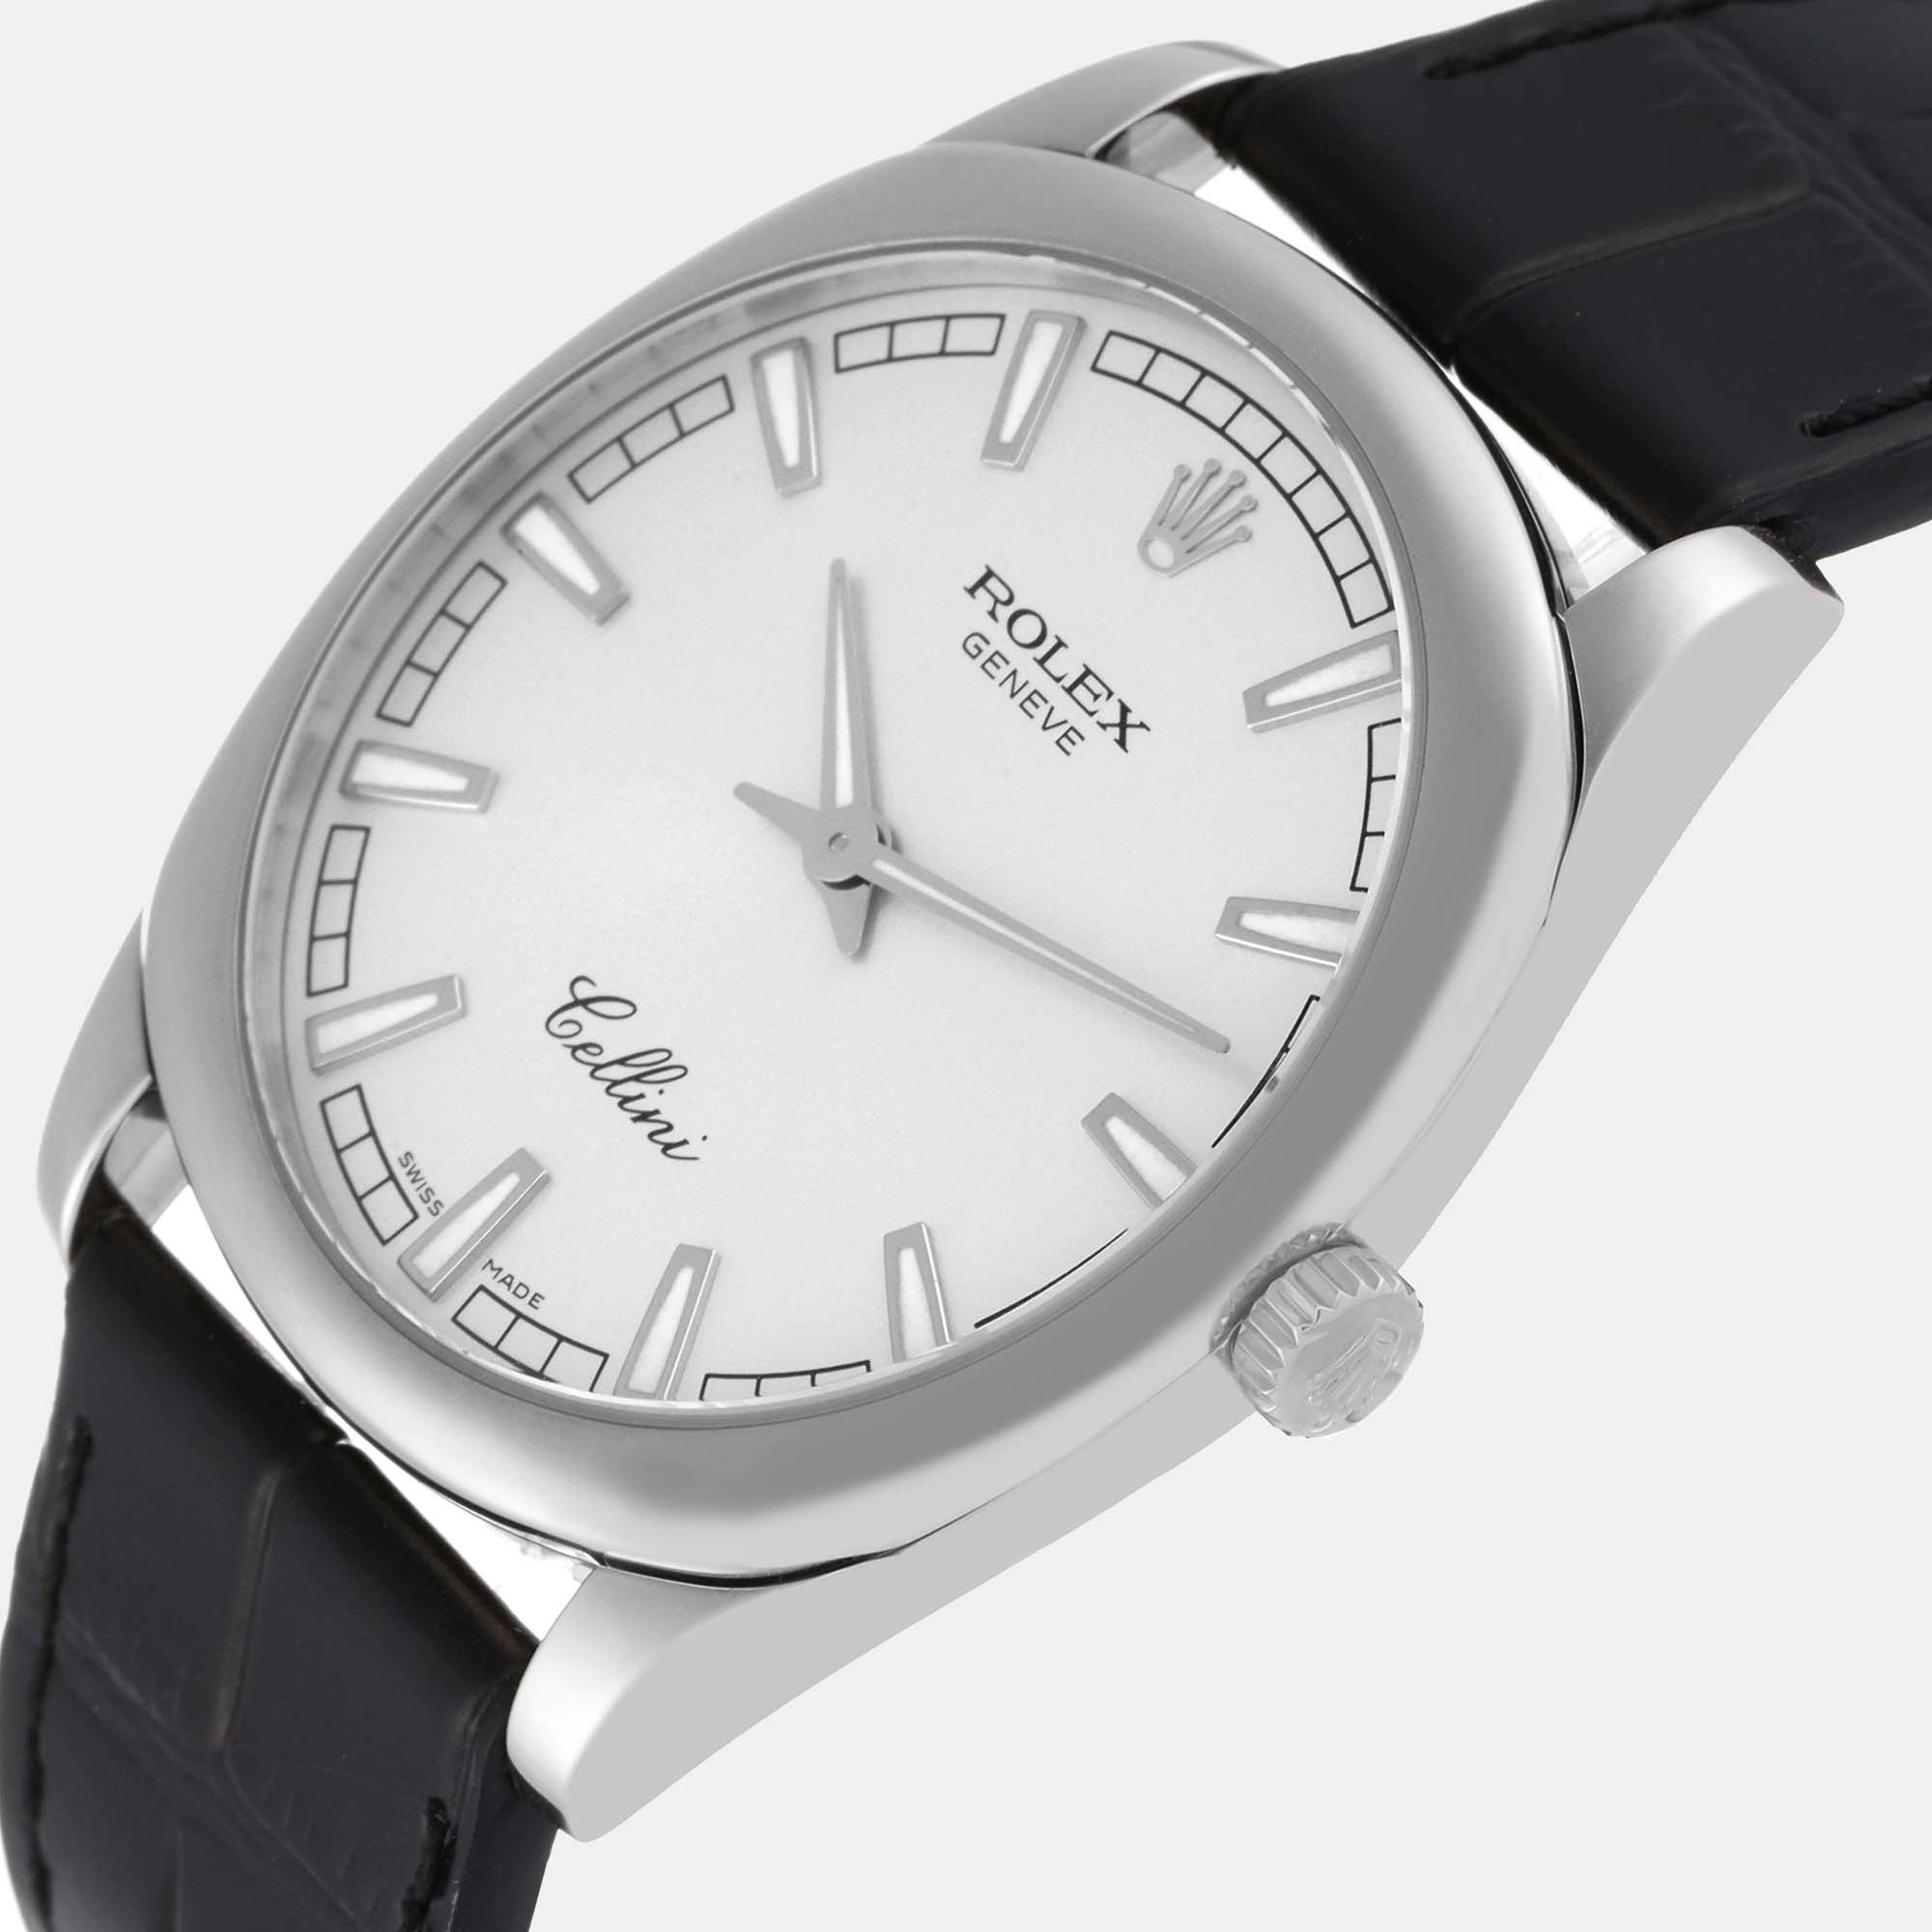 

Rolex Cellini Danaos White Gold Silver Dial Men's Watch 4243 38 mm